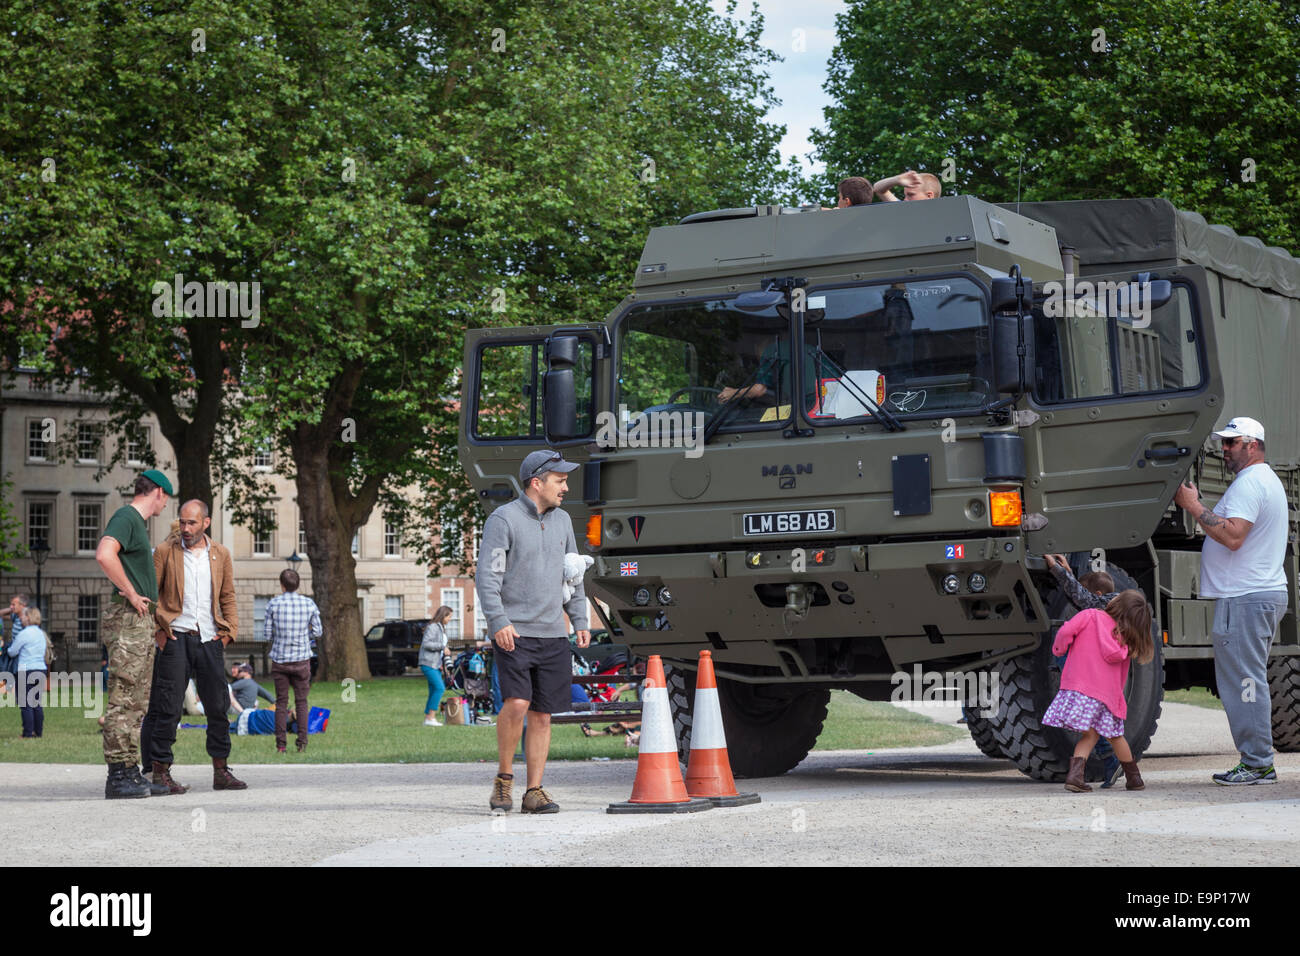 Les visiteurs explorent un véhicule de transport de l'armée qui constitue l'une des nombreuses attractions militaire dans la région de Queen Square, Bristol Banque D'Images